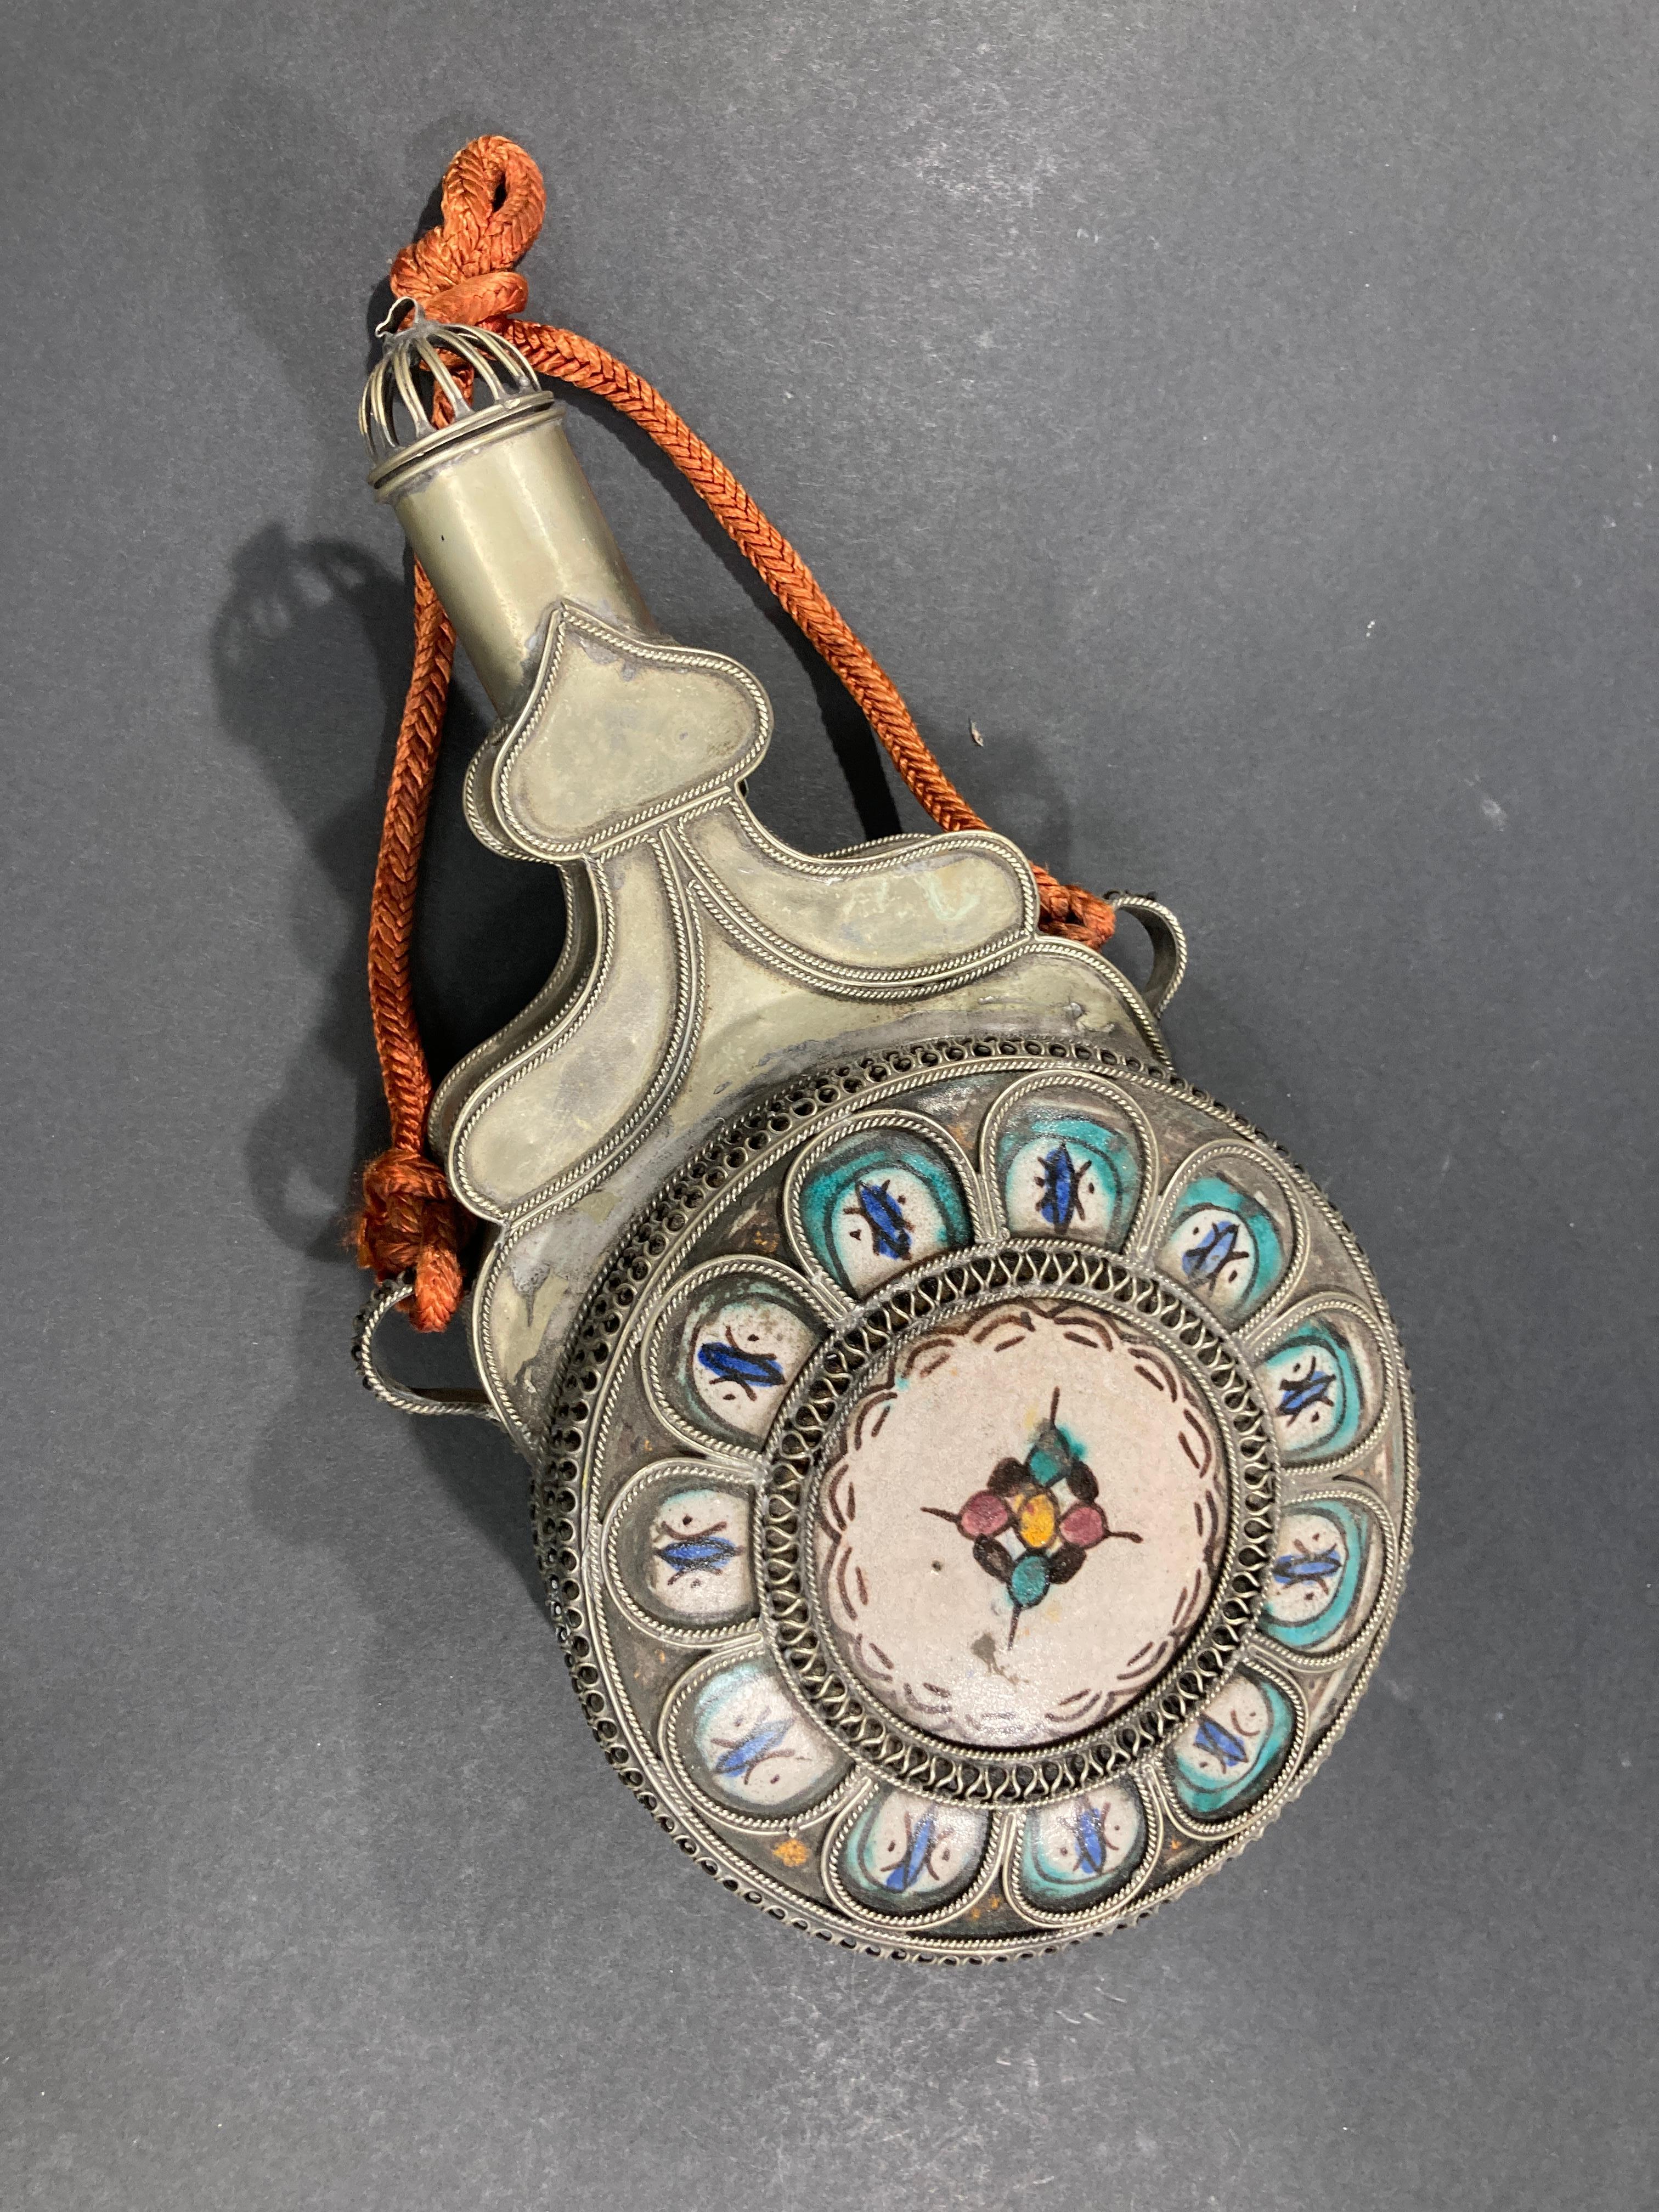 Antike marokkanische Keramik aus Fez, Anfang des 20. Jahrhunderts, verziert mit filigraner Silber-Nickel-Handarbeit.
Tolle, einzigartige, handgefertigte Urne mit Deckel mit handgemalten Motiven.
Großer maurischer Akzent.
Marokkanisches Steingut